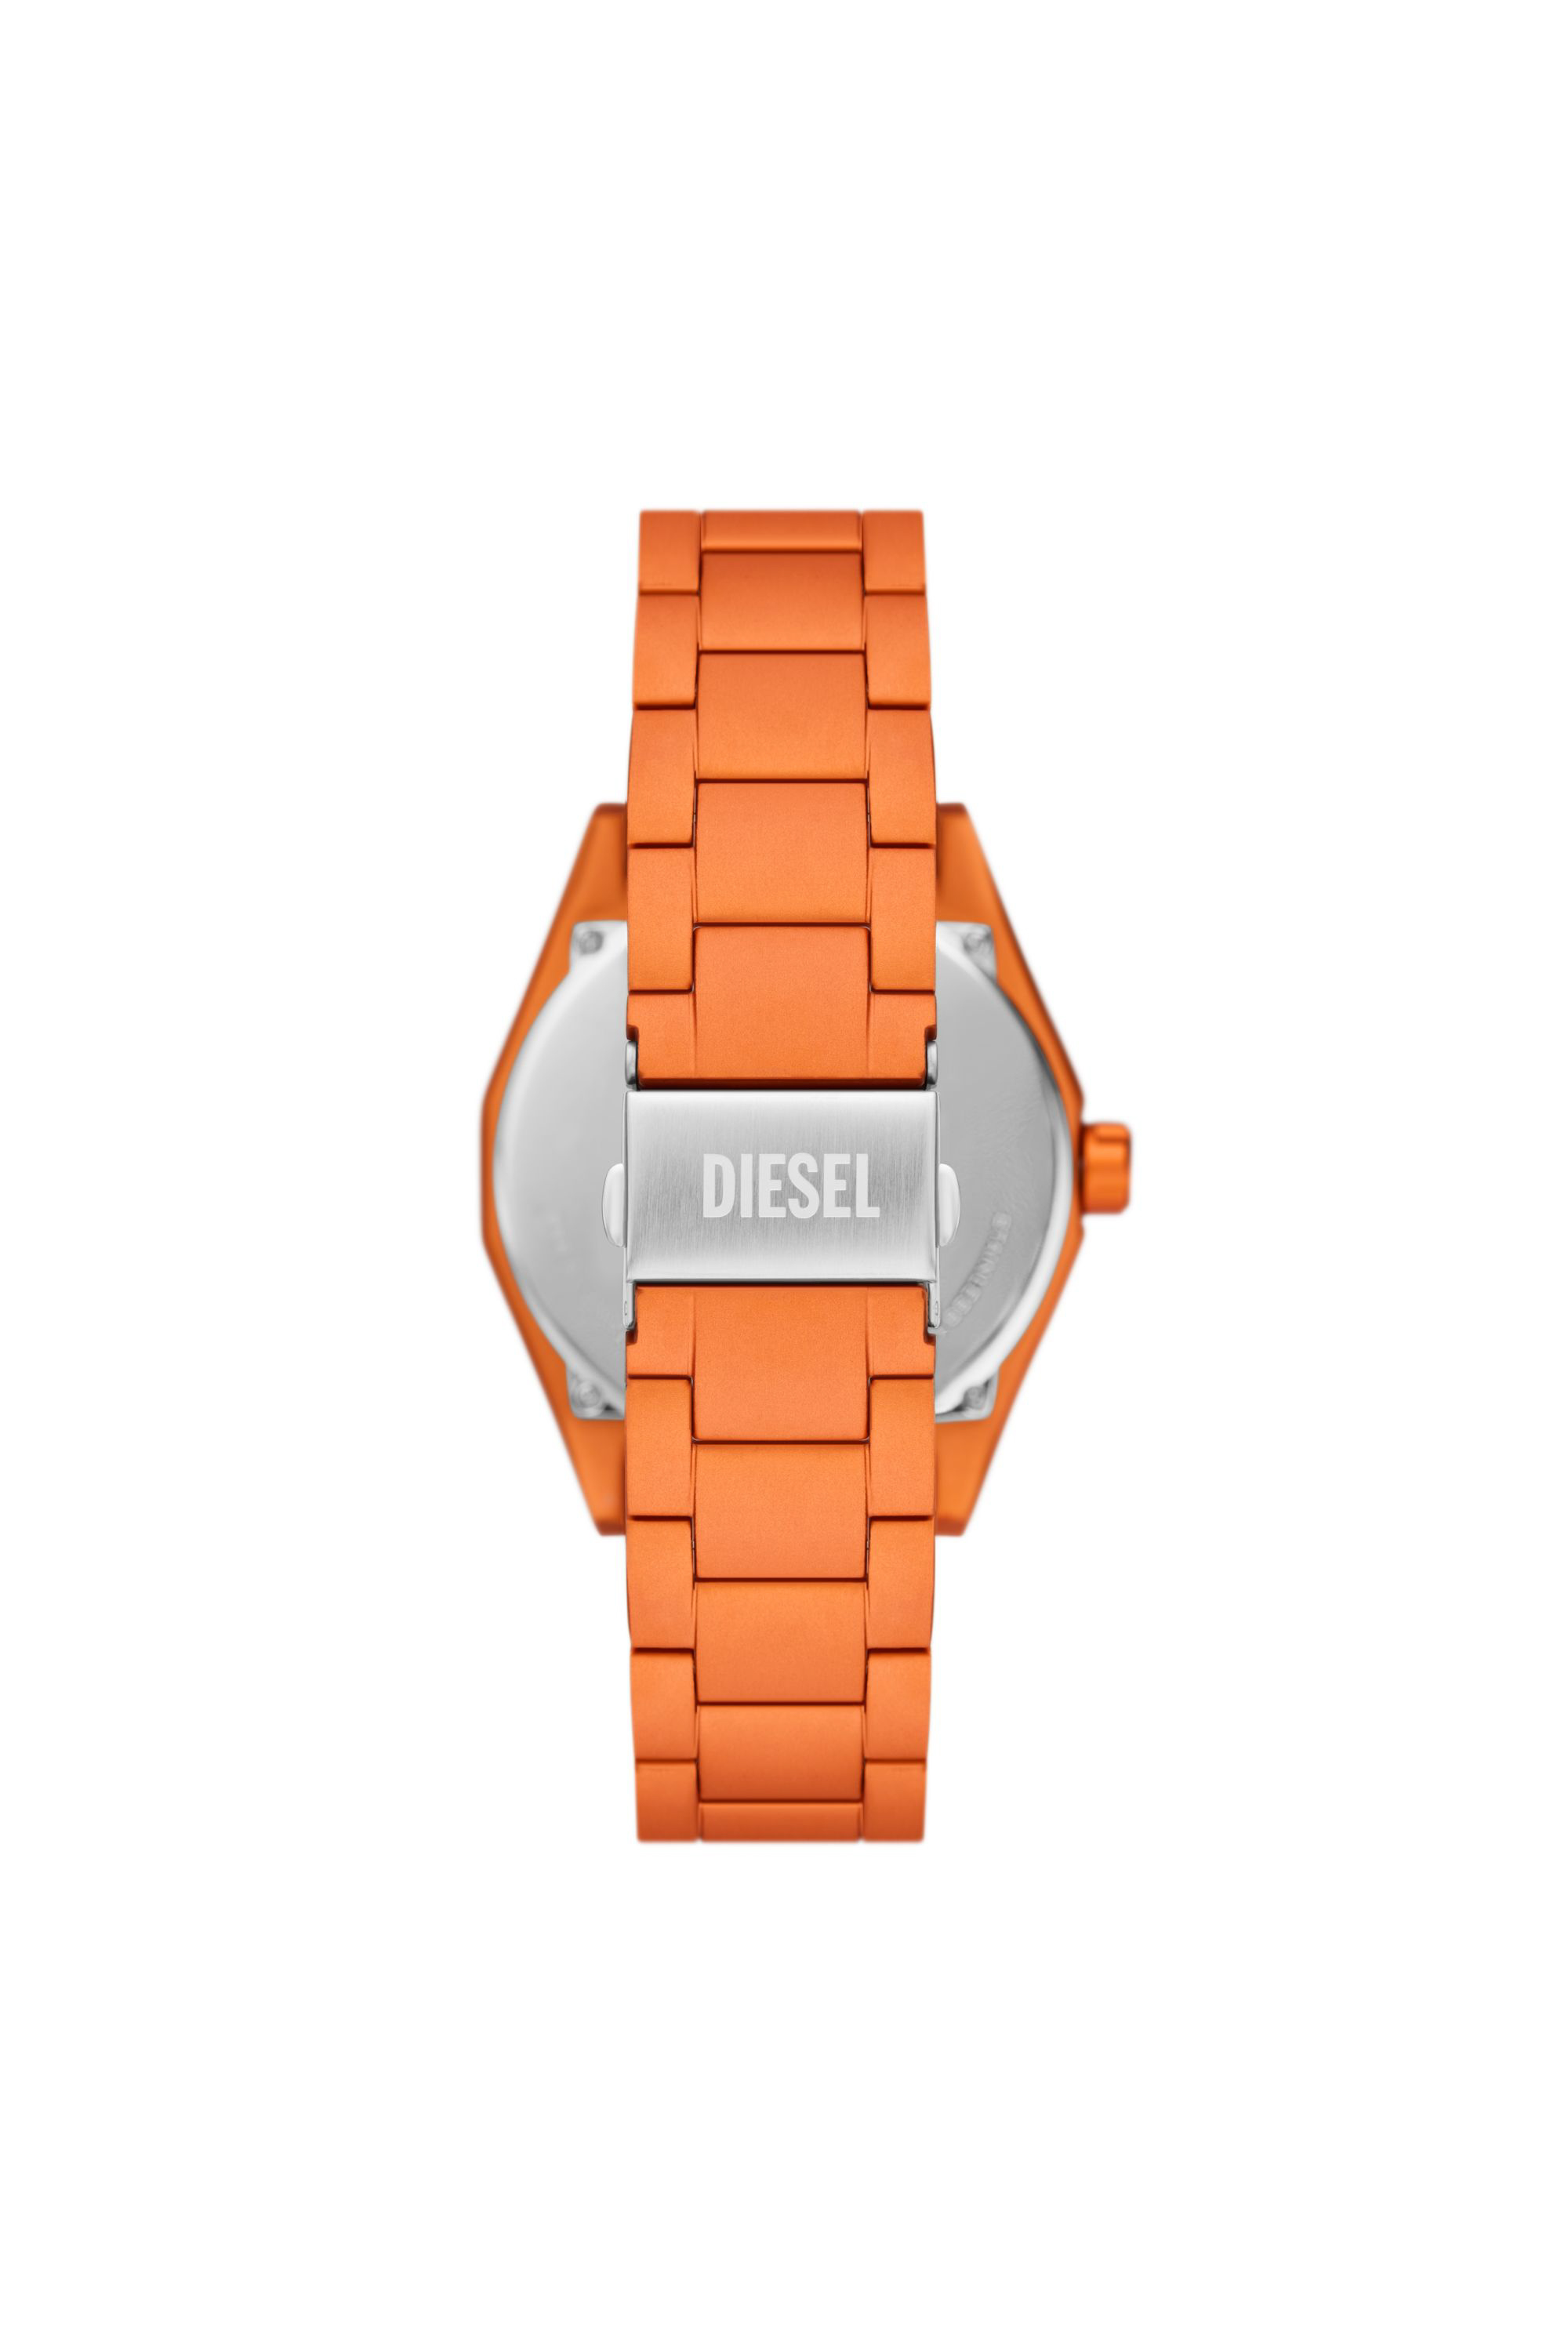 Diesel - DZ2209, Male Scraper three-hand orange aluminum watch in オレンジ - Image 2